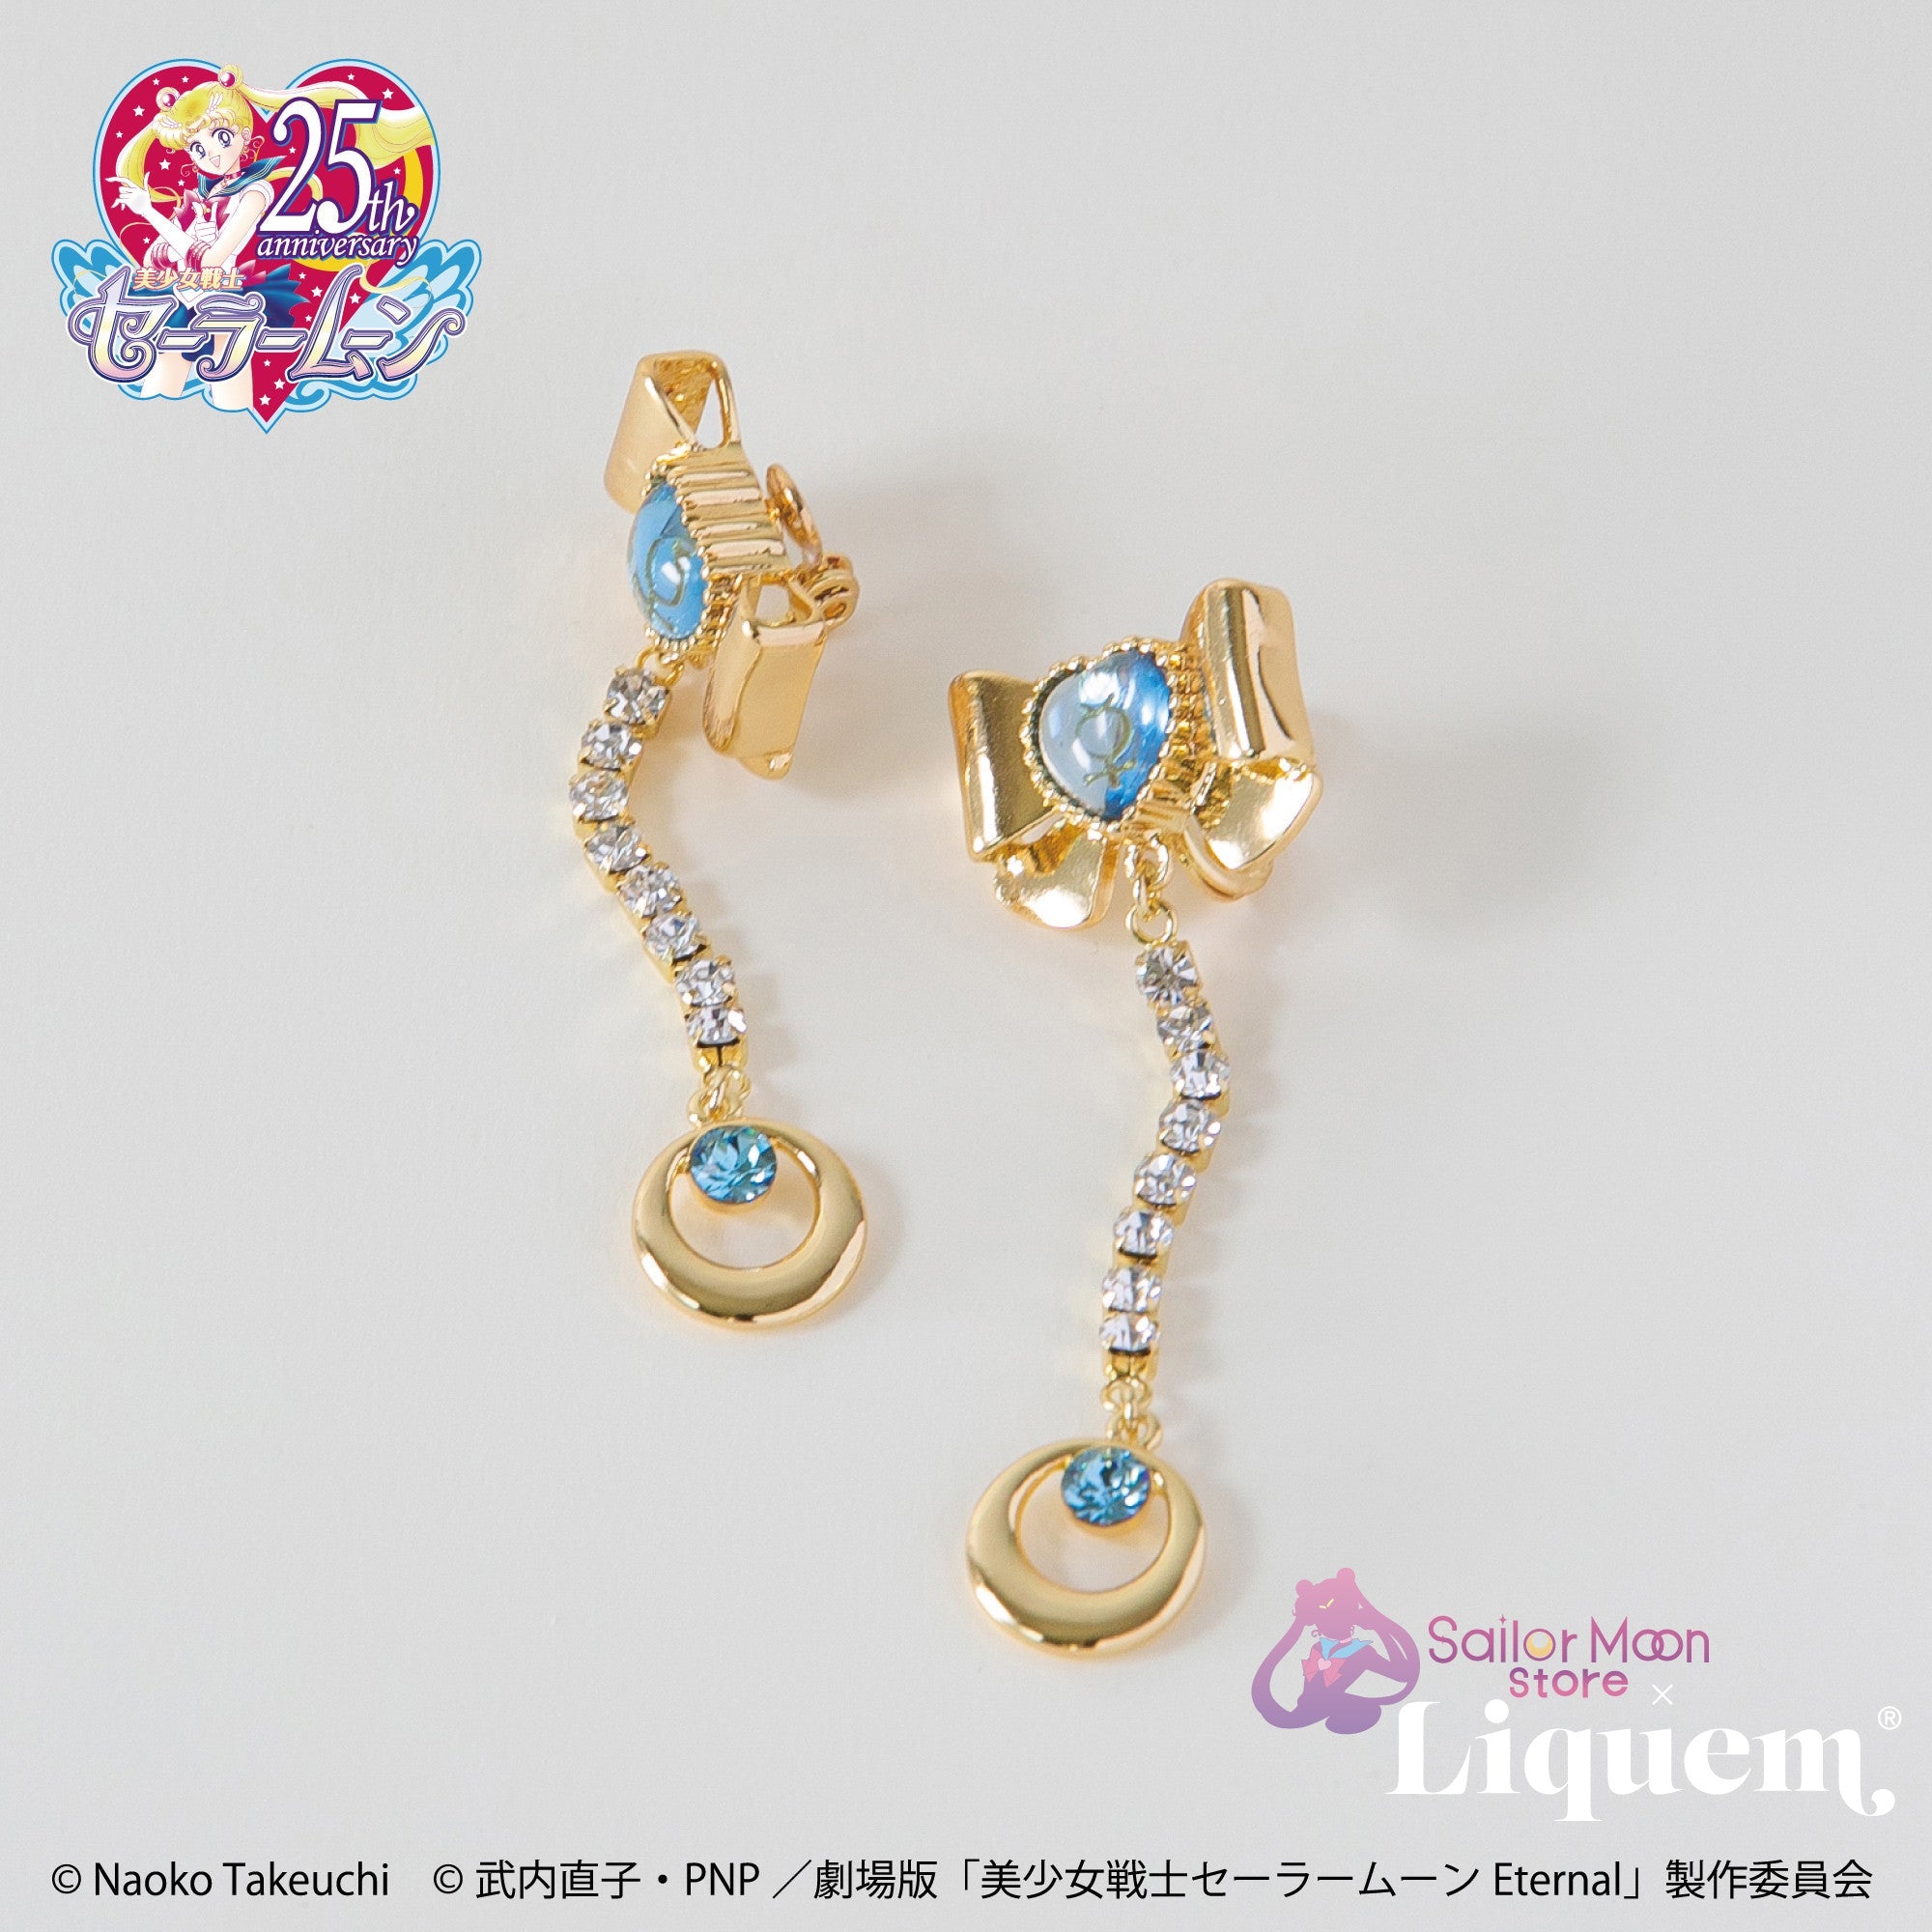 Sailor Moon store x Liquem / スーパーセーラーマーキュリーリボン